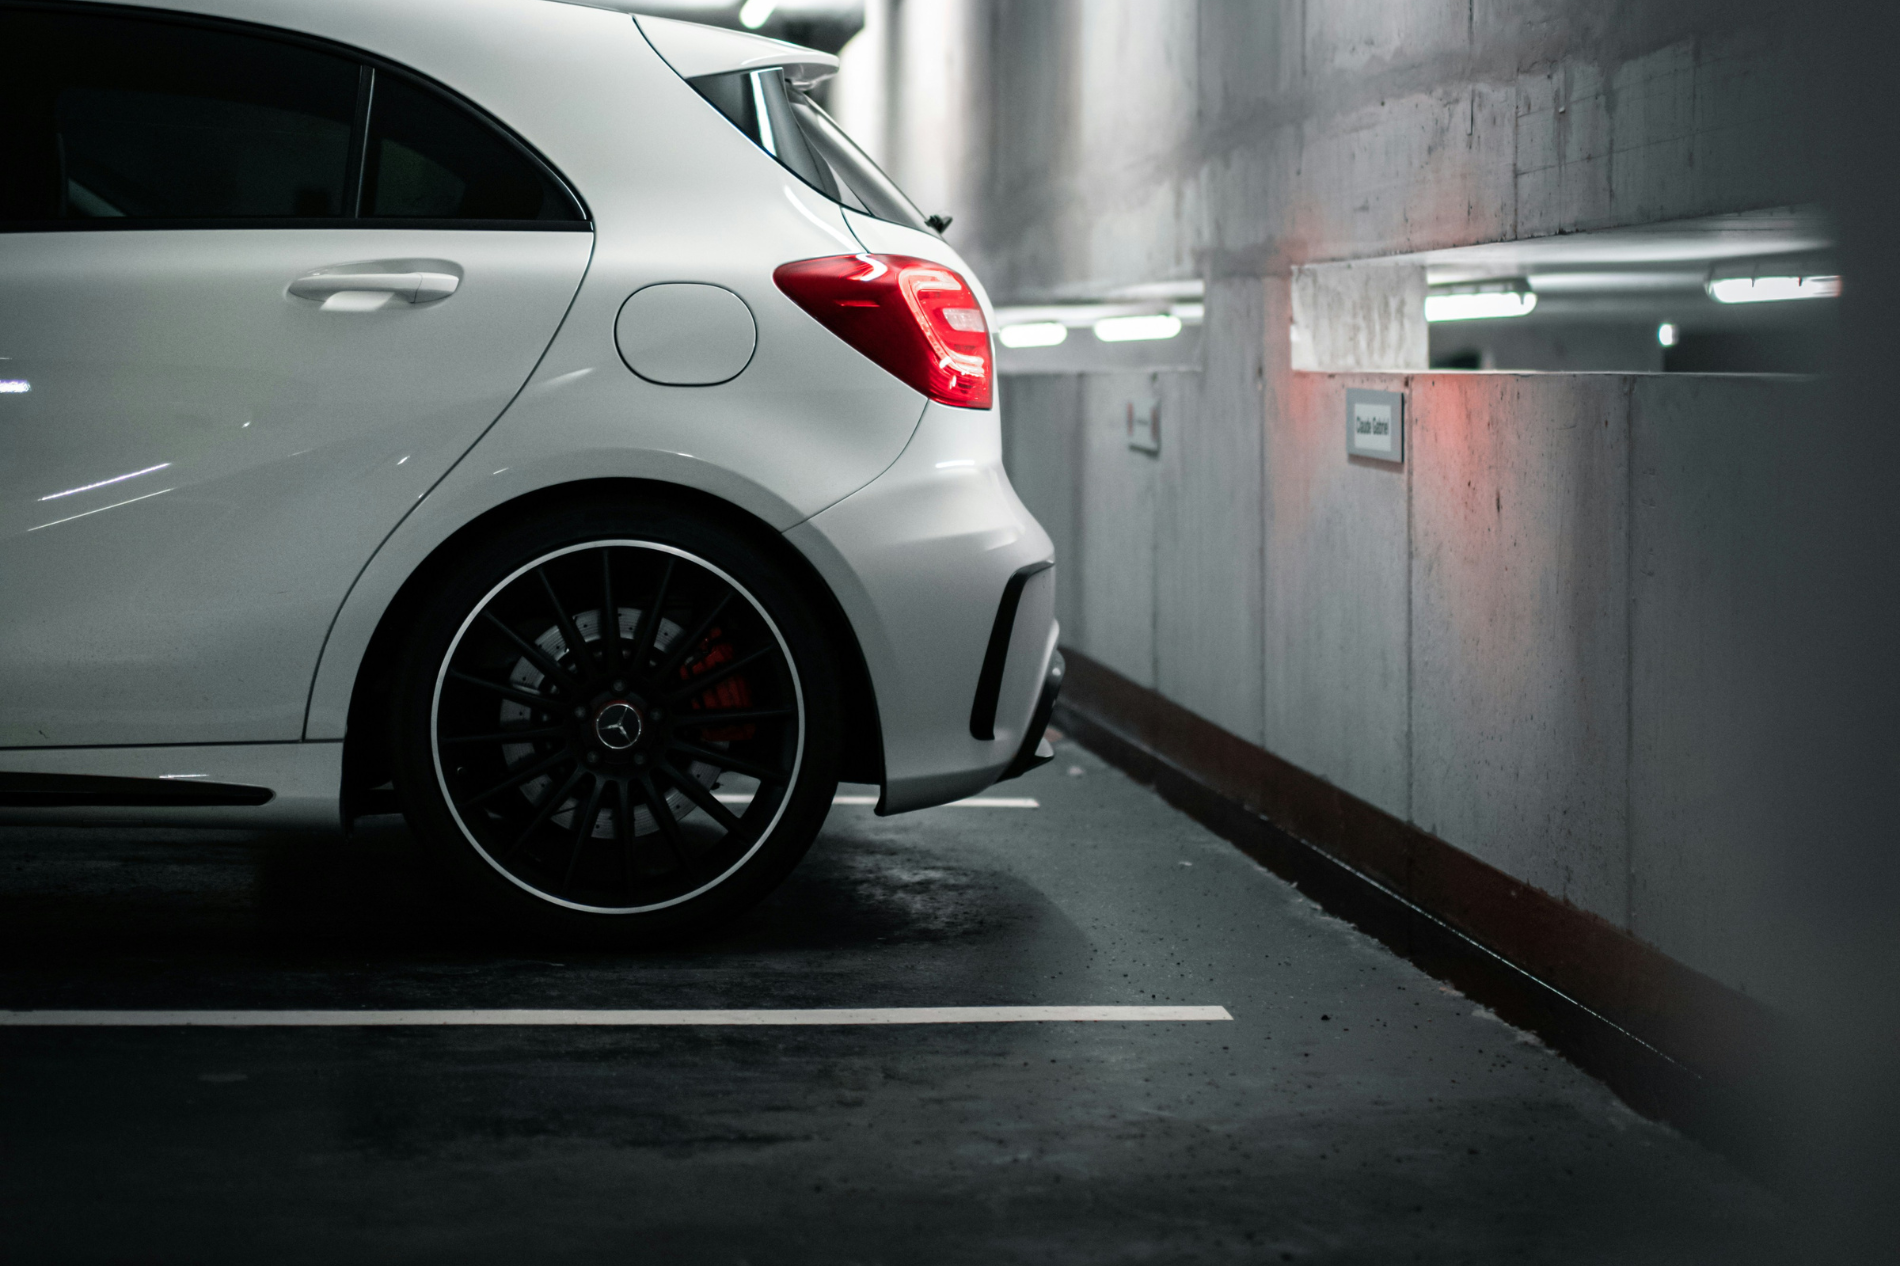 Mercedes-benz a-class parked in a parking garage.